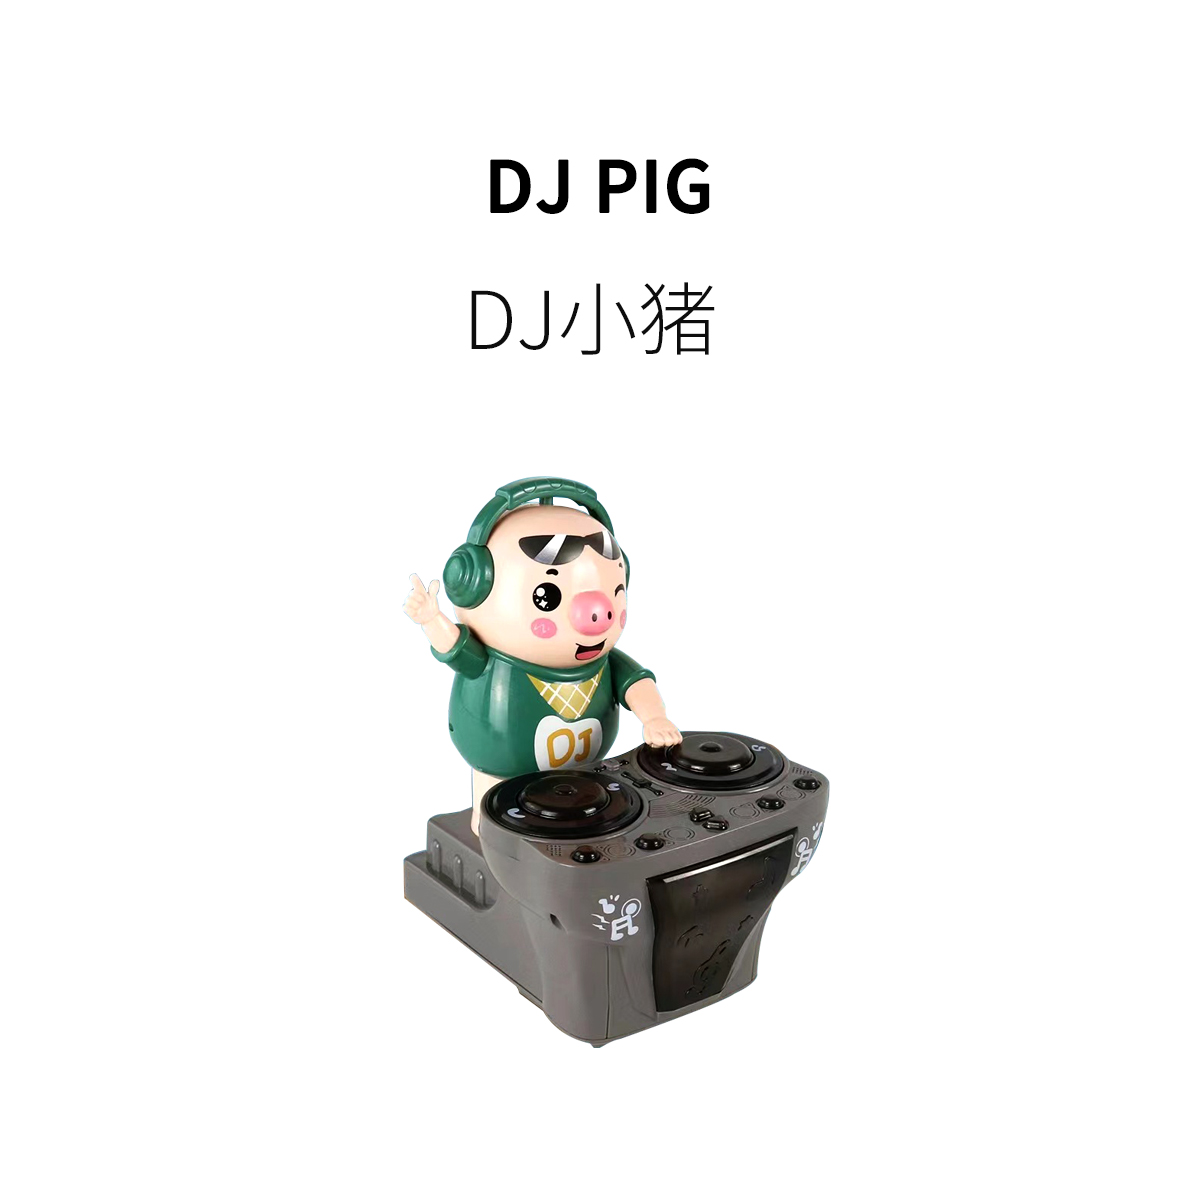 FUN HO /搞怪潮小猪DJ打碟唱歌跳舞机器人电动摇摆减压创意玩具